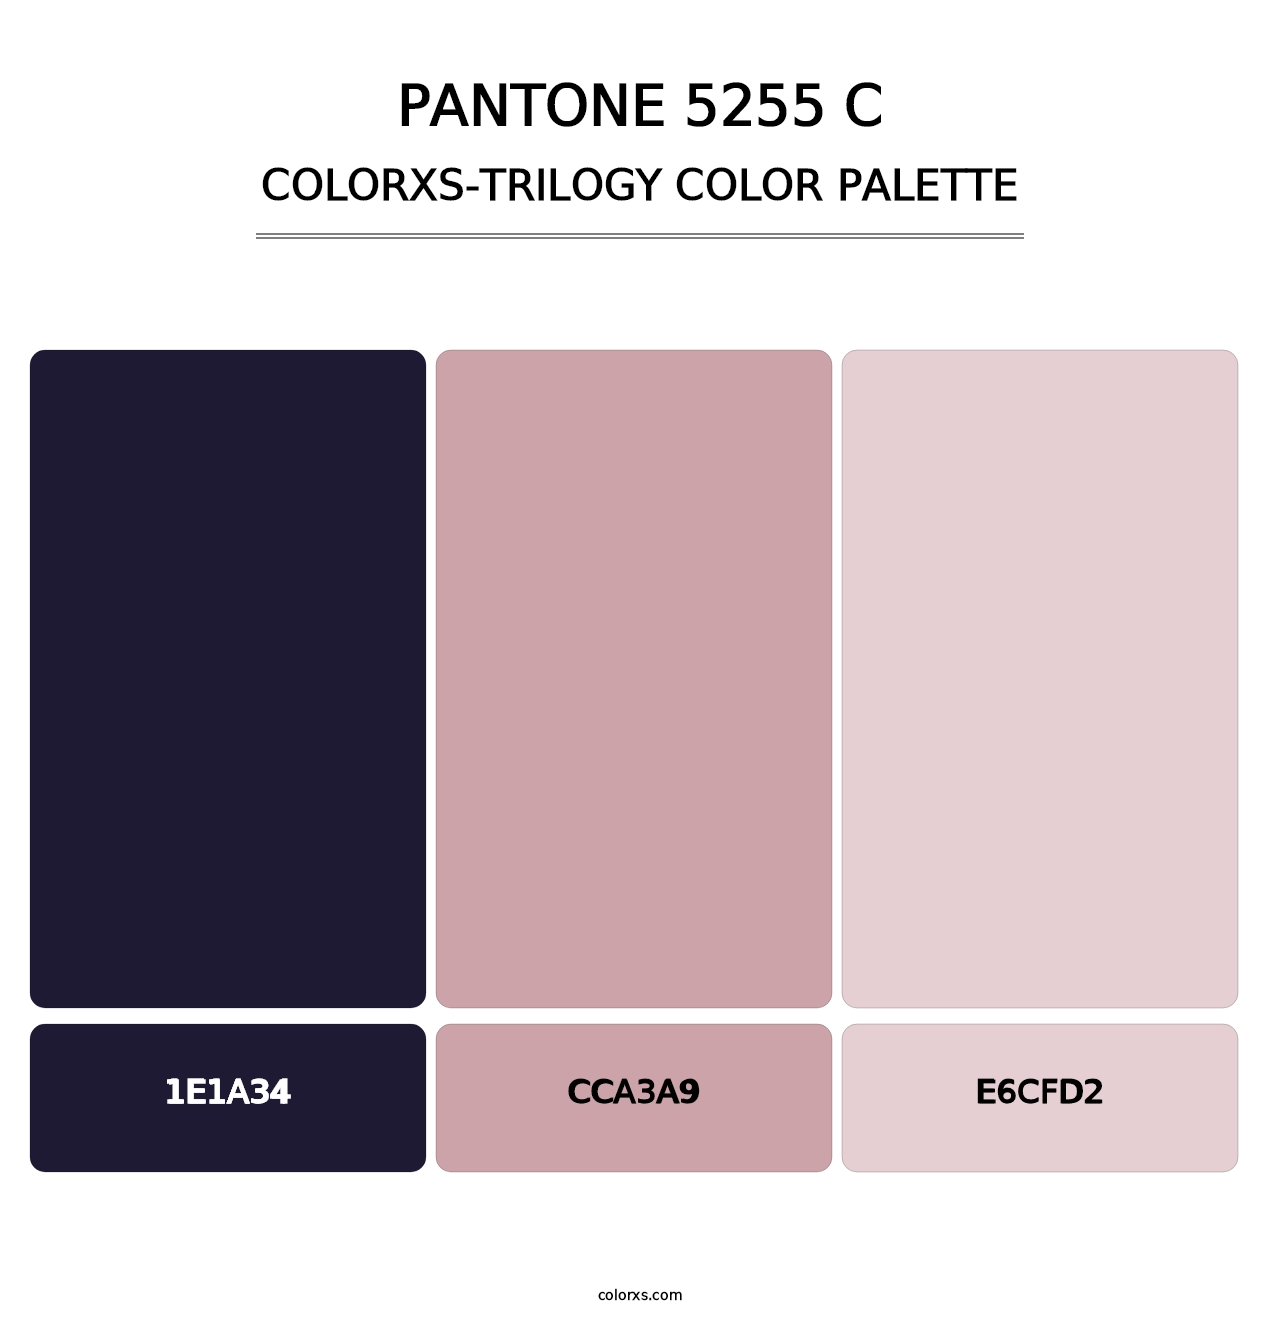 PANTONE 5255 C - Colorxs Trilogy Palette